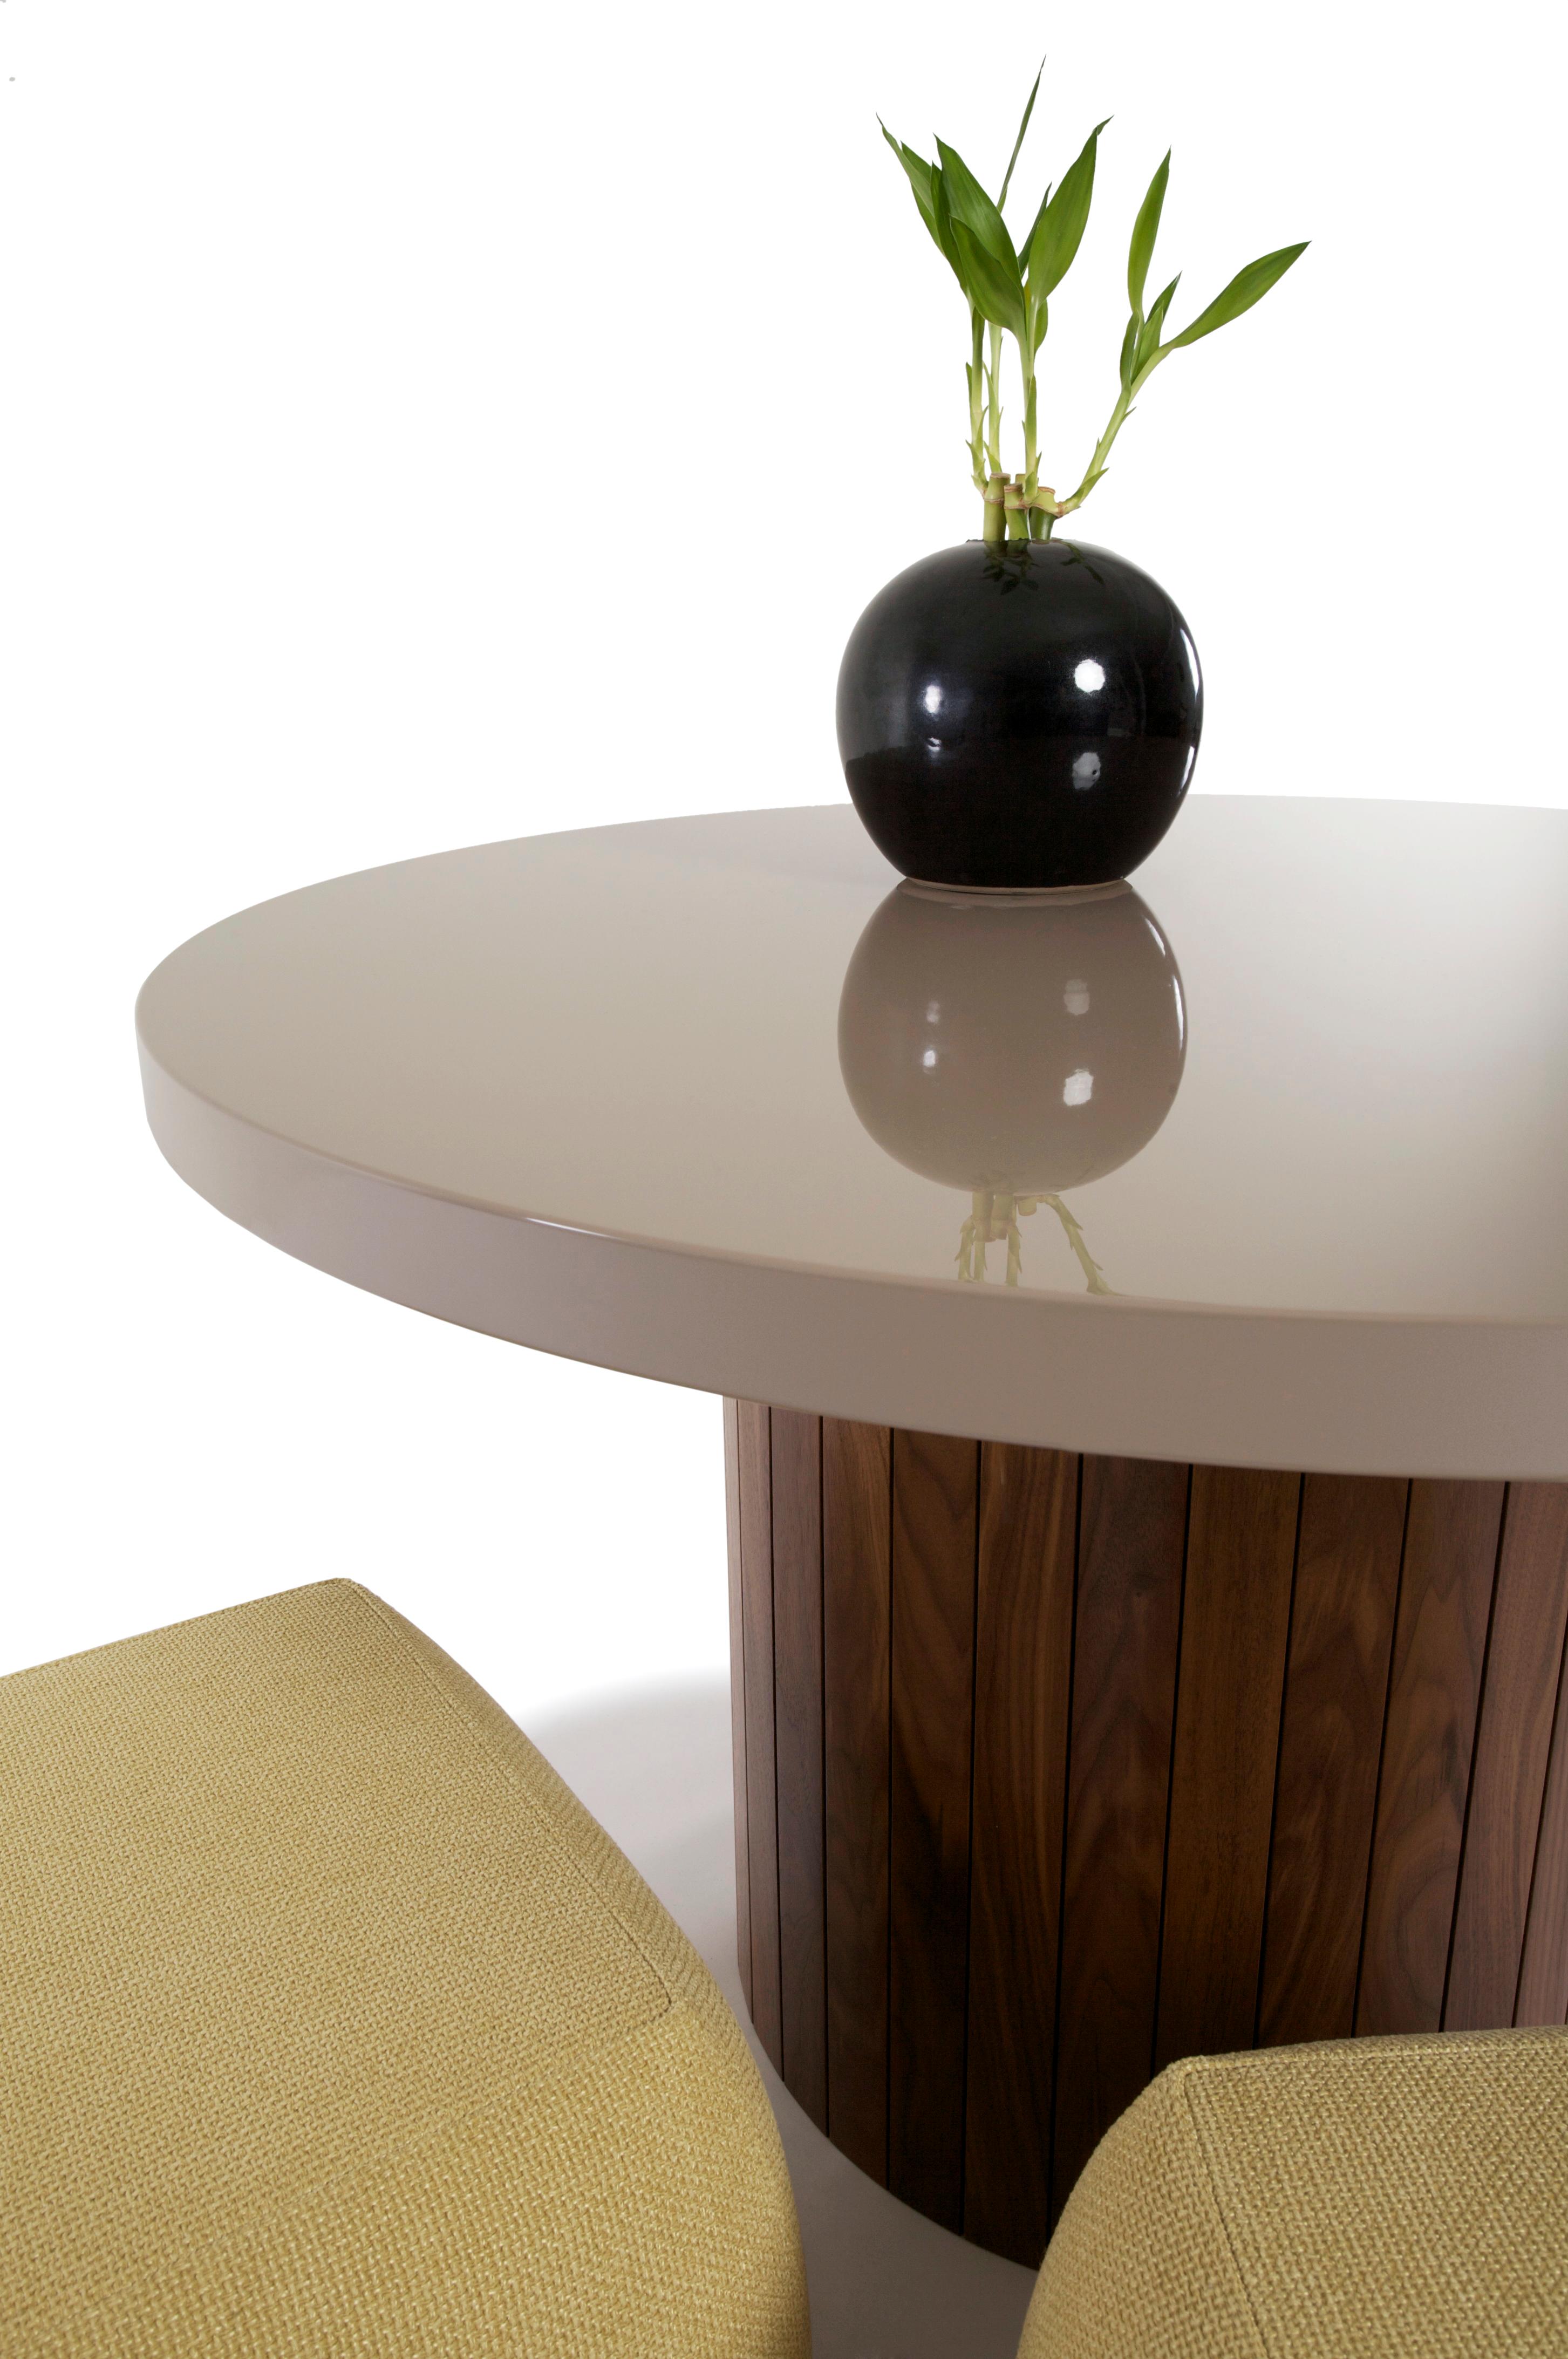 Die Holz-Lack-Kombination des Plank Table erinnert an eine andere Zeit, in der Wert und Vornehmheit durch handwerkliches Können und Schlichtheit aufgewogen wurden. Die Lackplatte bringt diesen Tisch zurück in die Mitte des 20. Jahrhunderts, und die